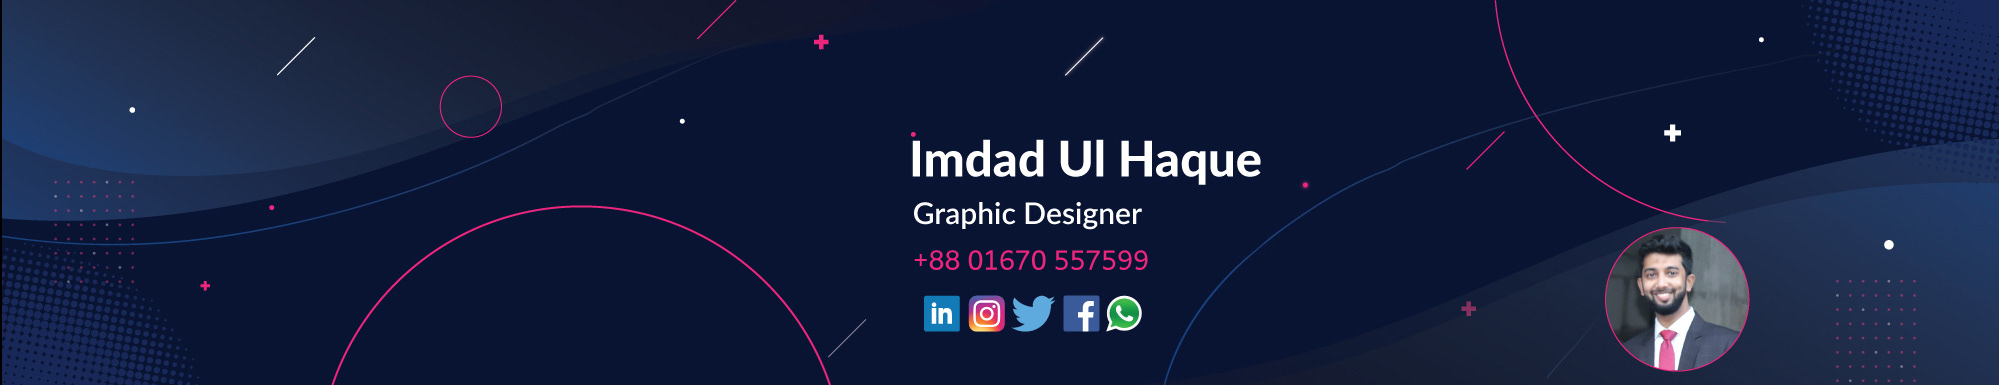 Banner de perfil de Imdad ul Haque ✪